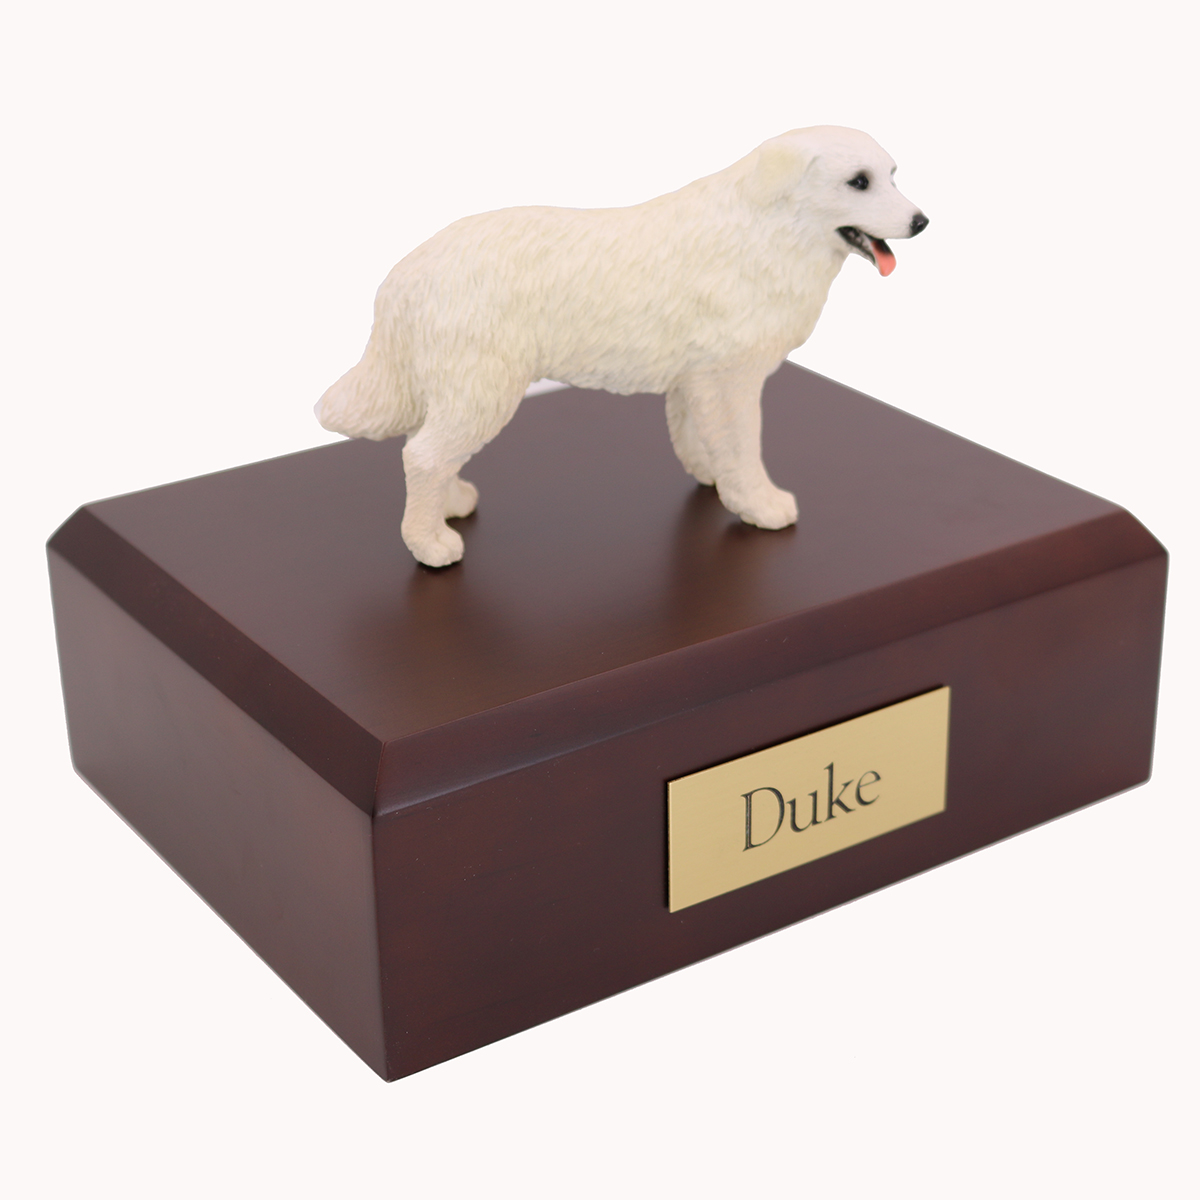 Dog, Kuvasz - Figurine Urn